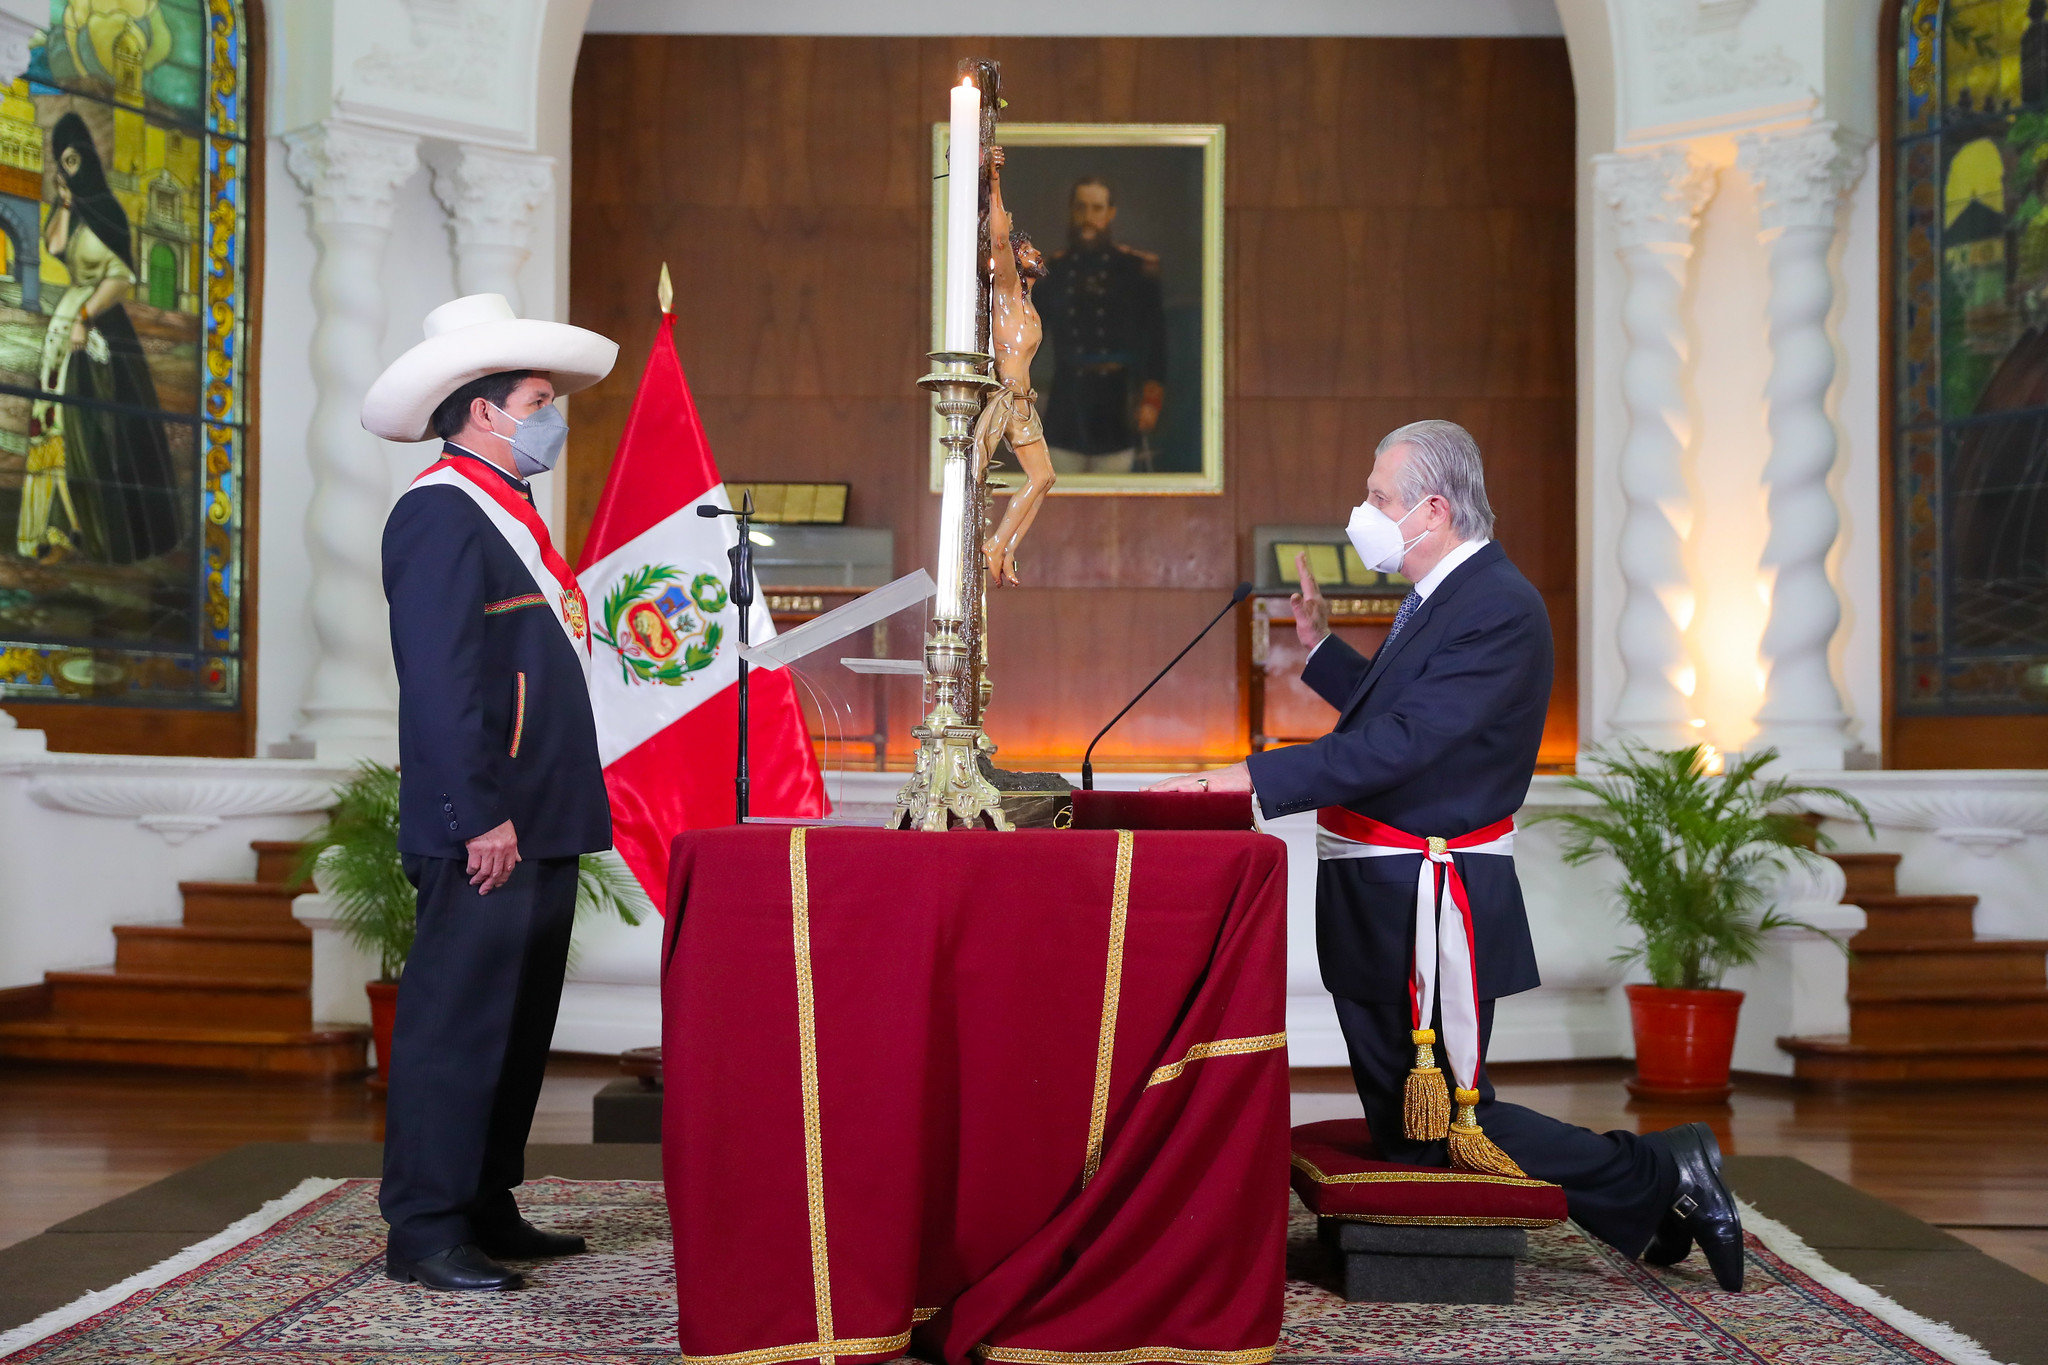 PERÚ: Presidente Castillo toma juramento a ministro de Relaciones Exteriores